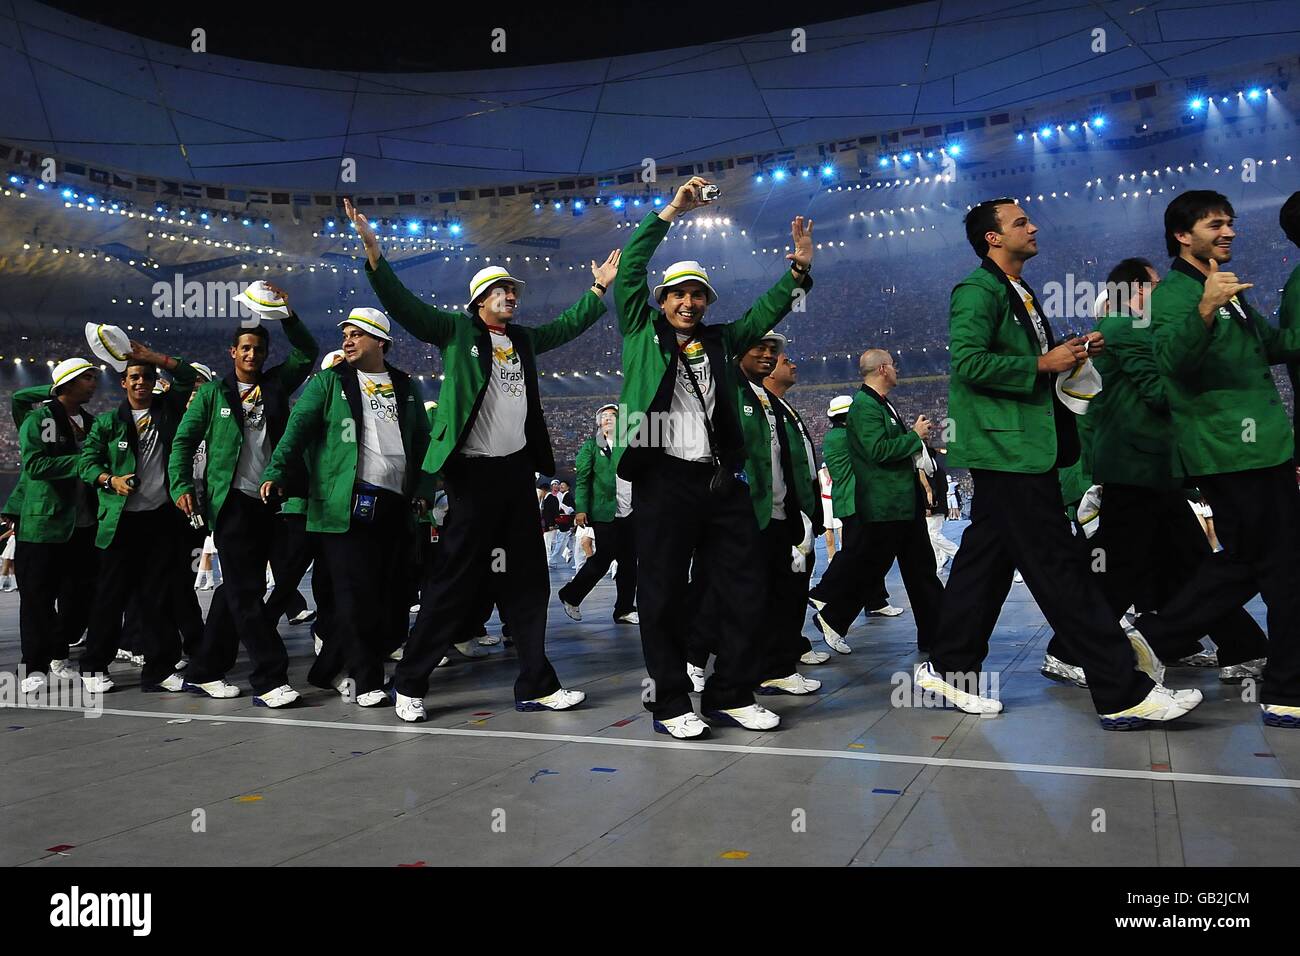 Olympiques - Jeux Olympiques de Beijing 2008 - cérémonie d'ouverture.L'équipe brésilienne pendant les Jeux Olympiques de 2008 à Beijing. Banque D'Images